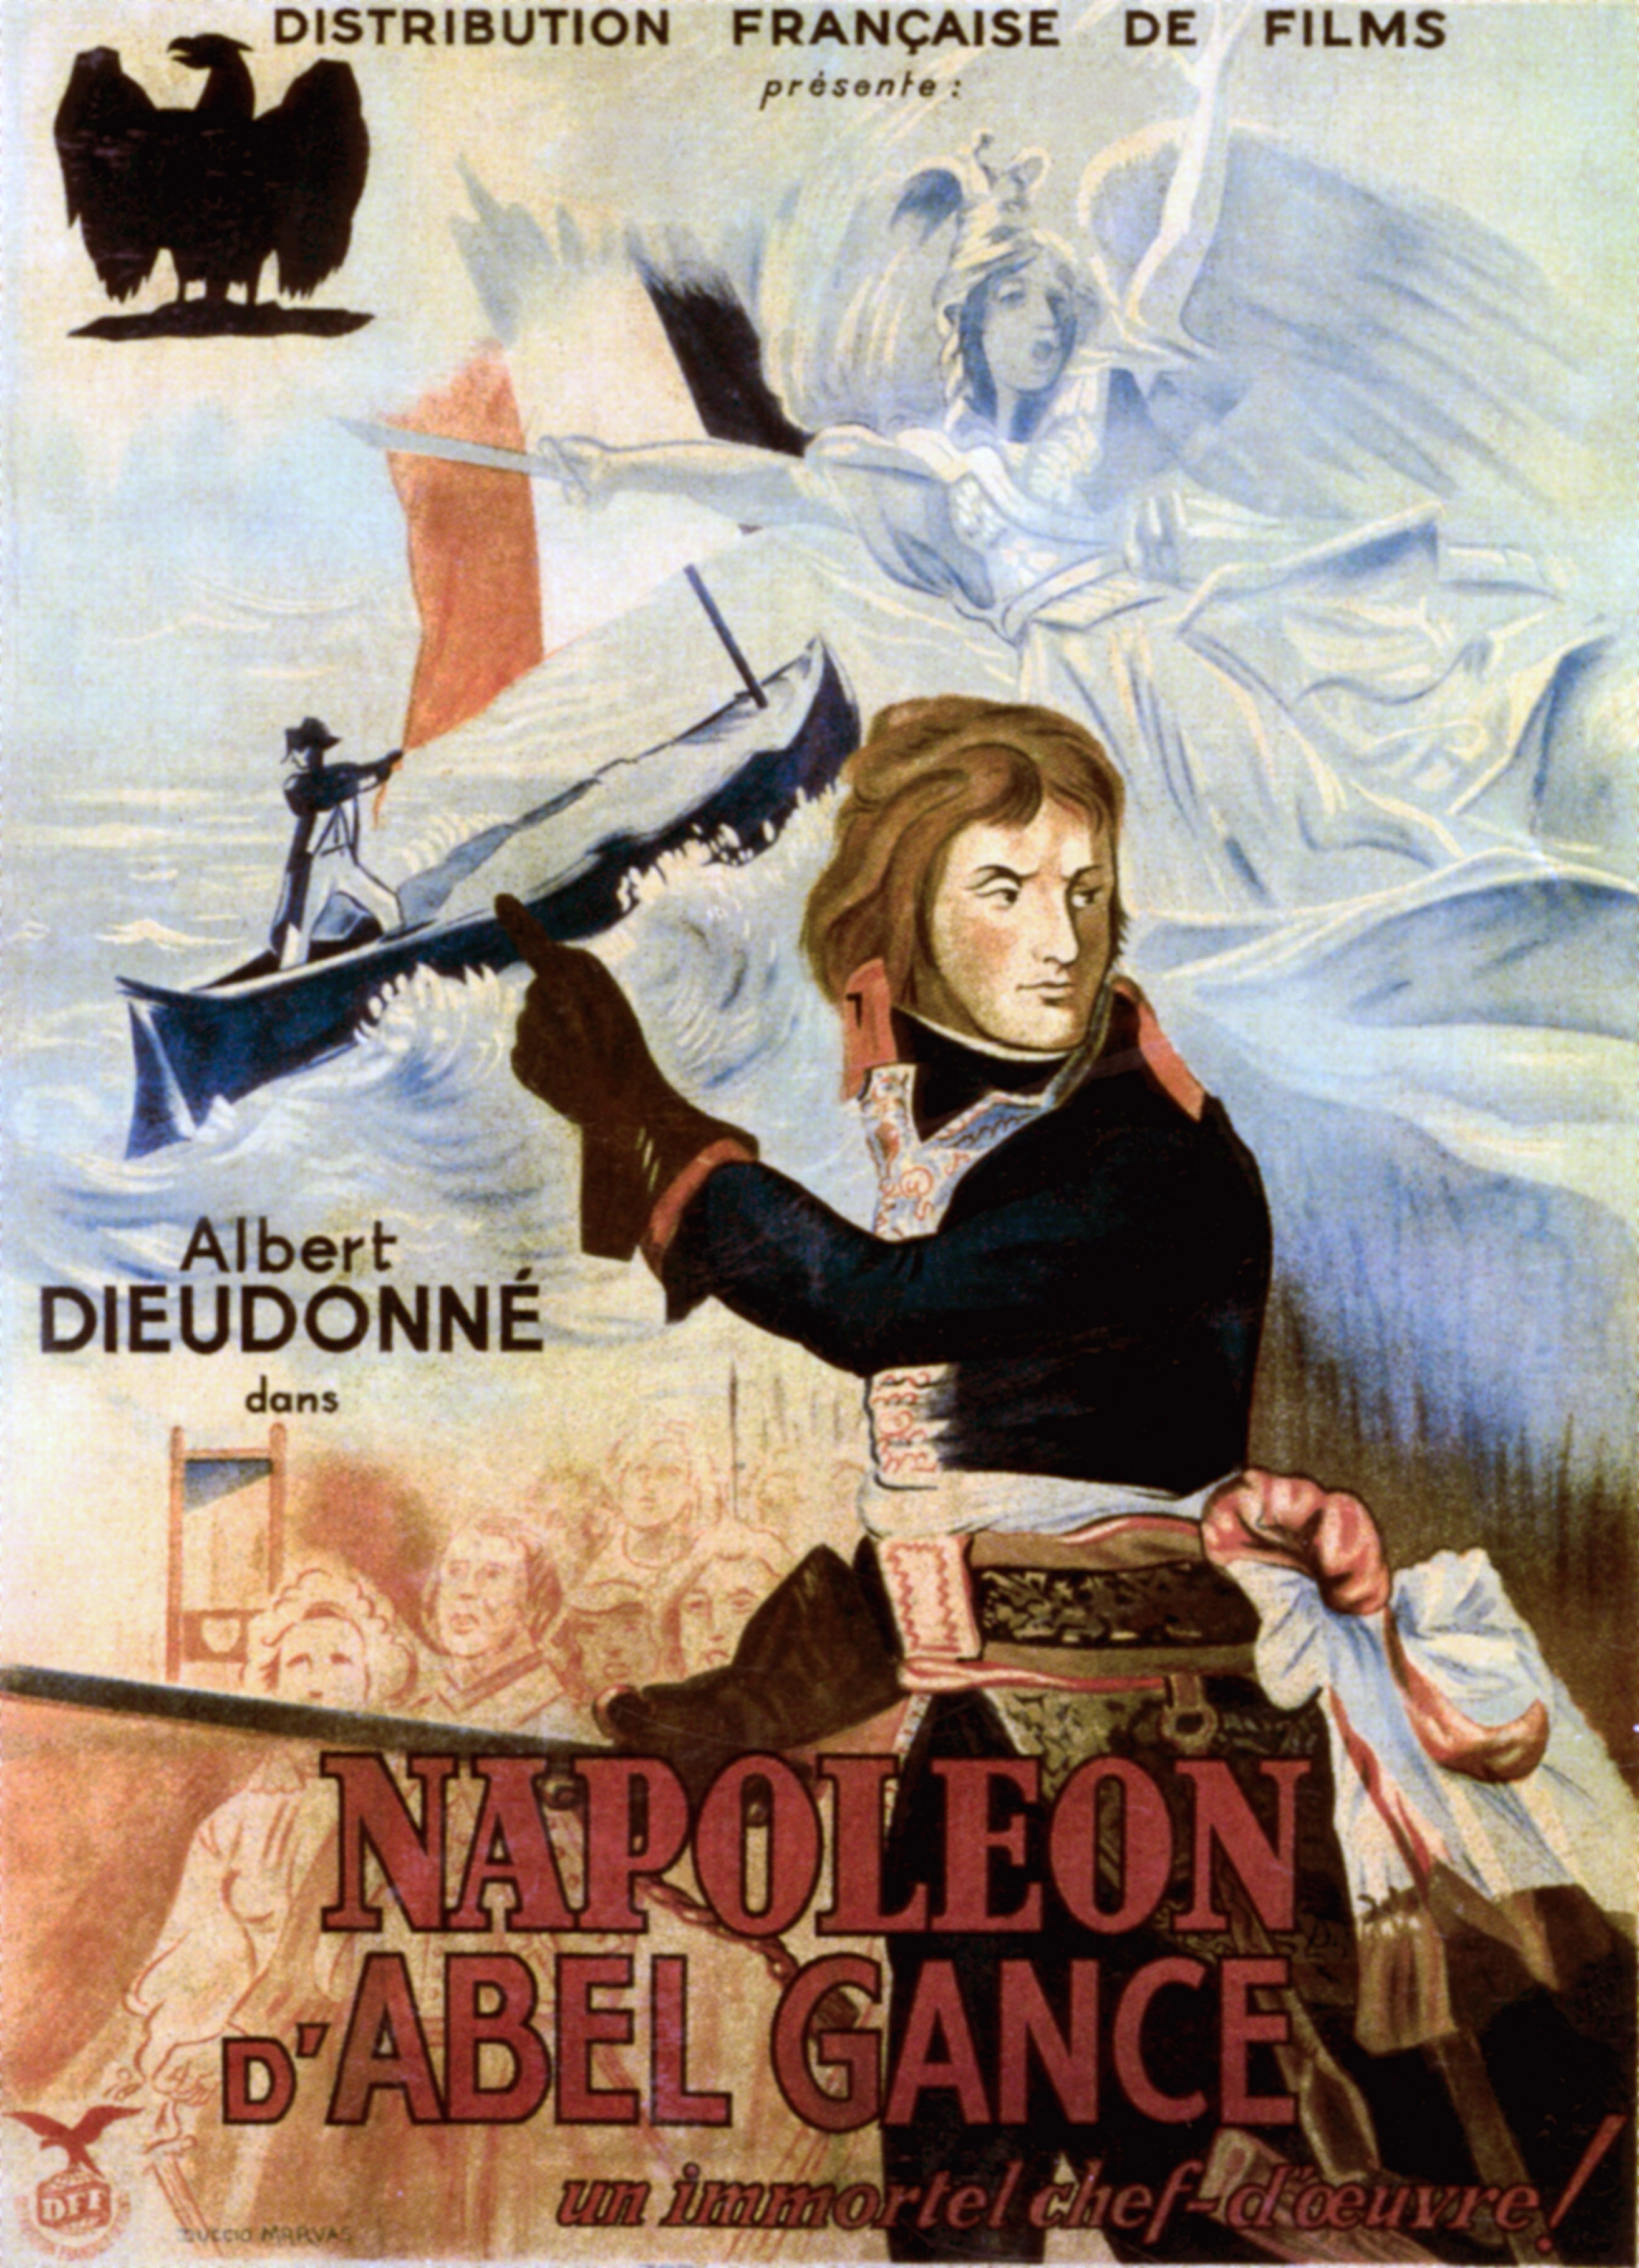 La locandina originale del film di Abel Gance "Napoleon", 1927